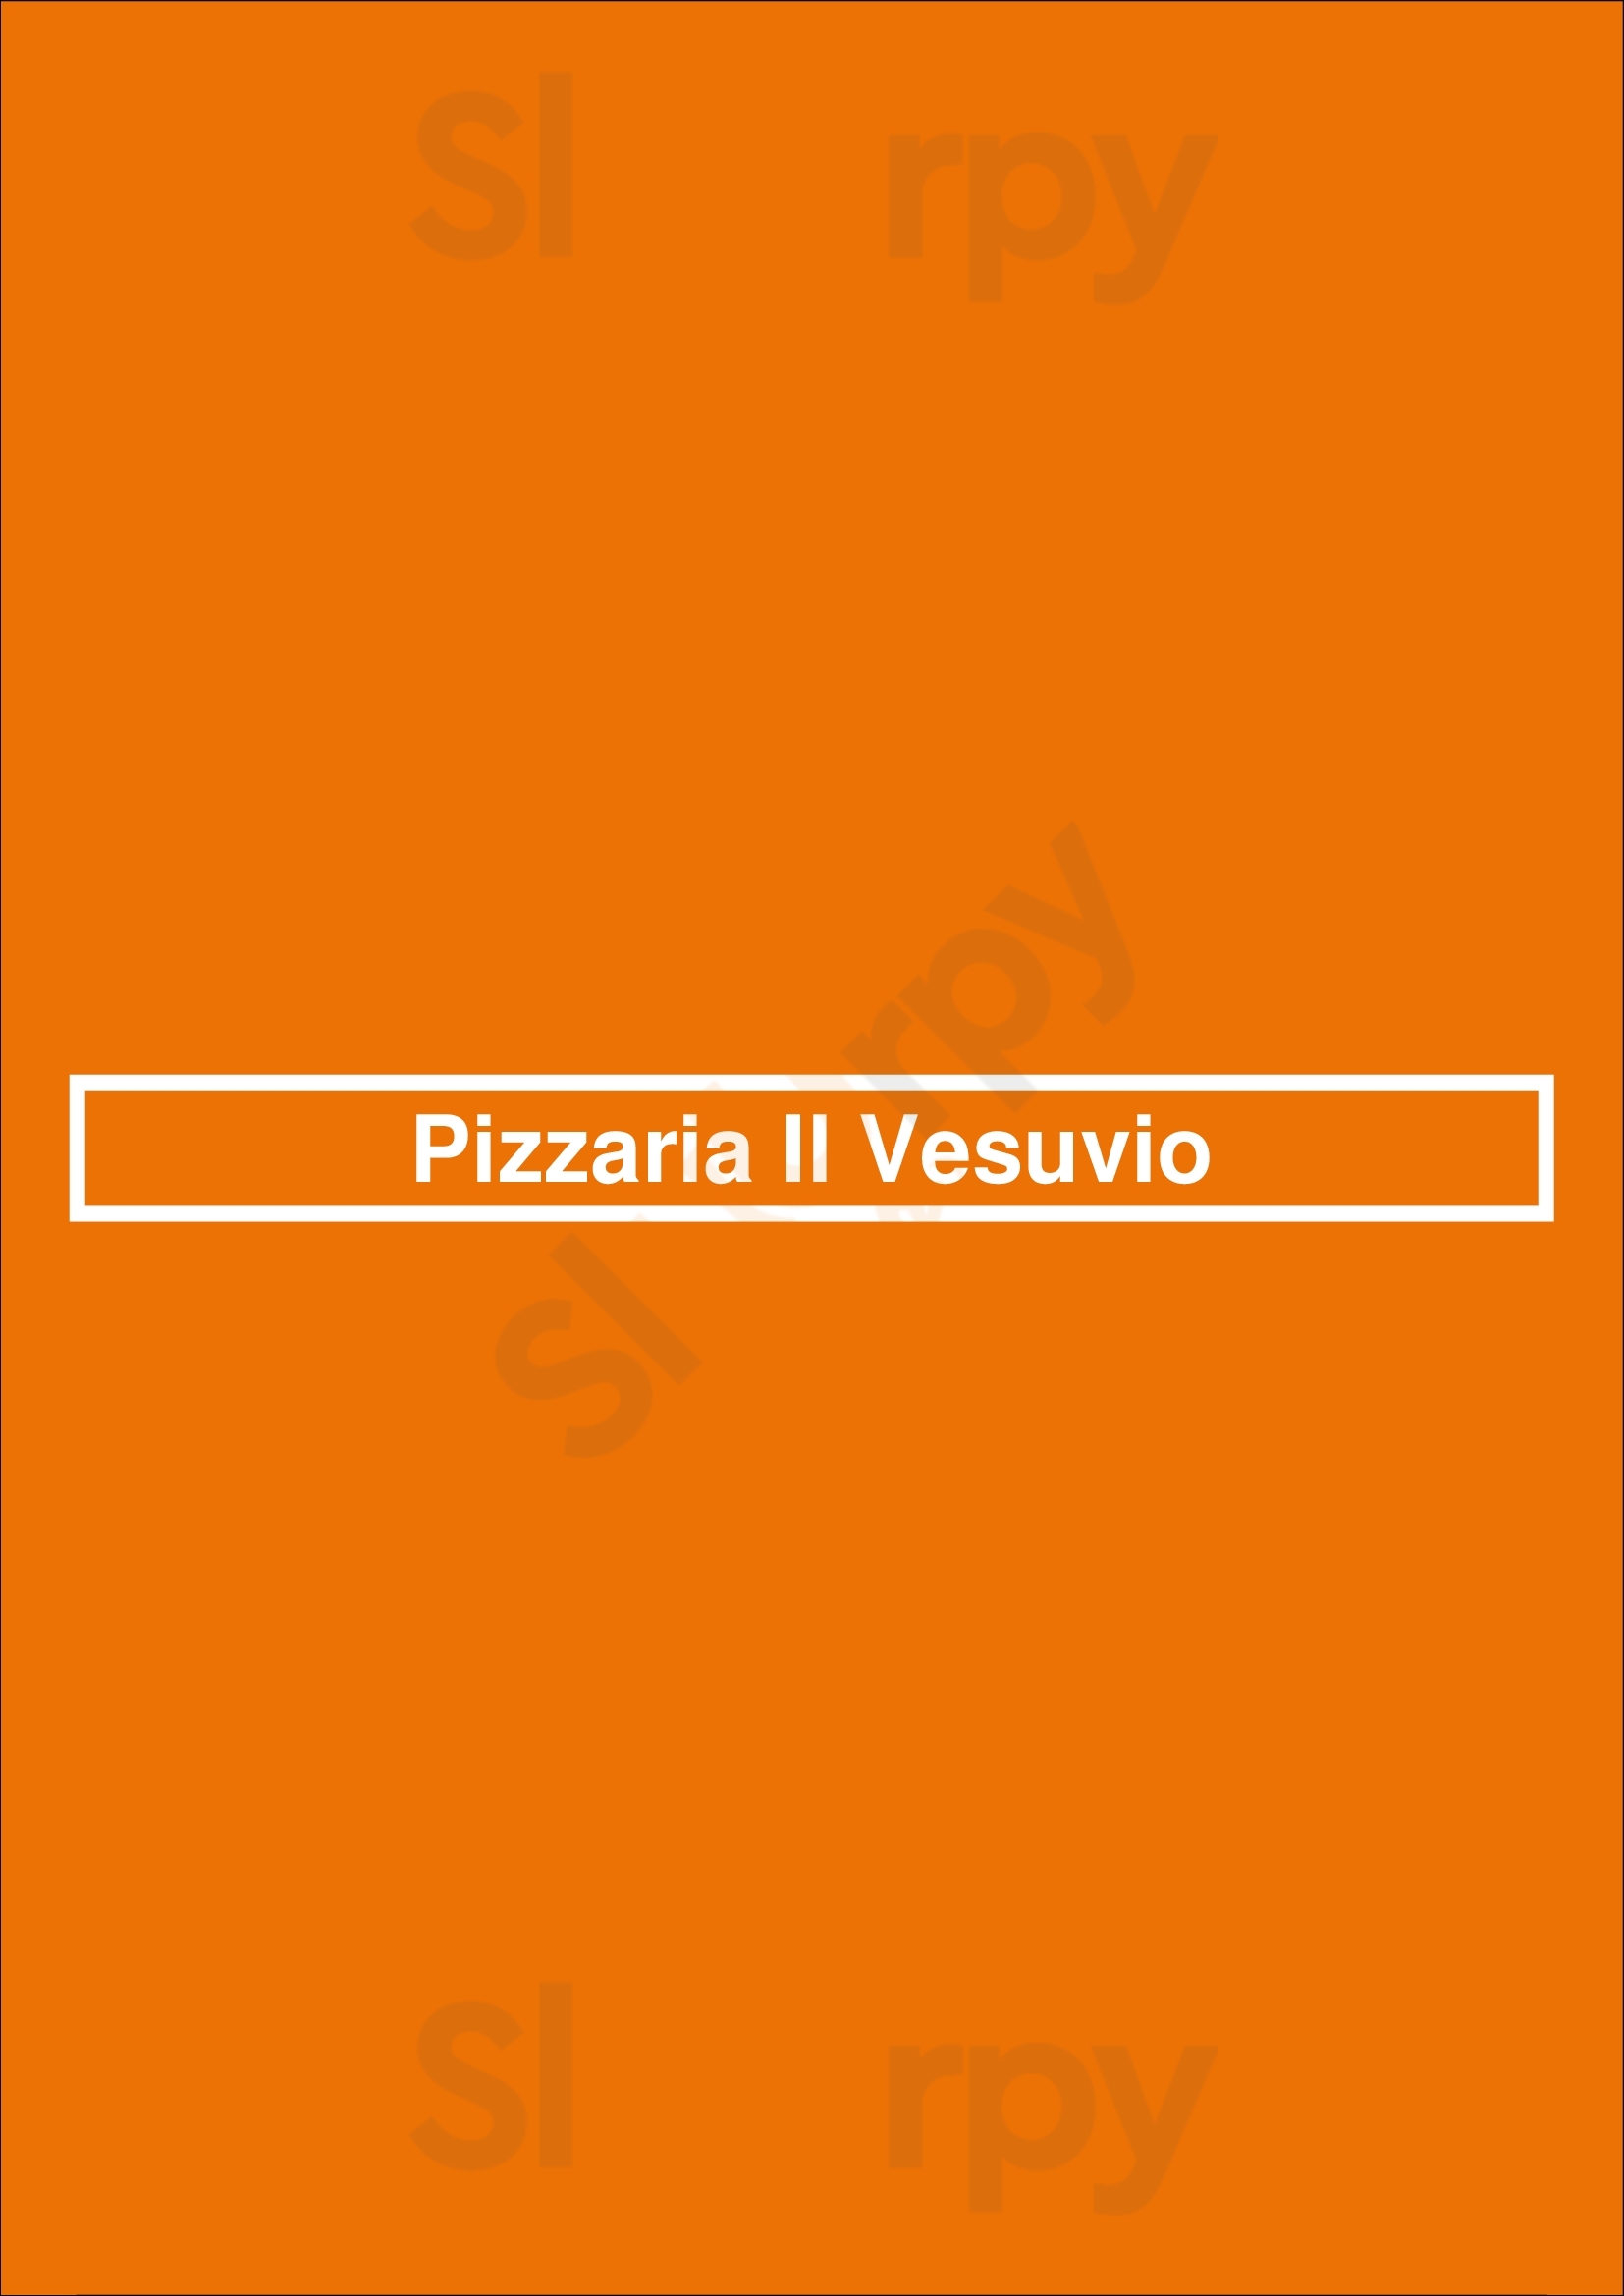 Pizzaria Il Vesuvio Den Haag Menu - 1